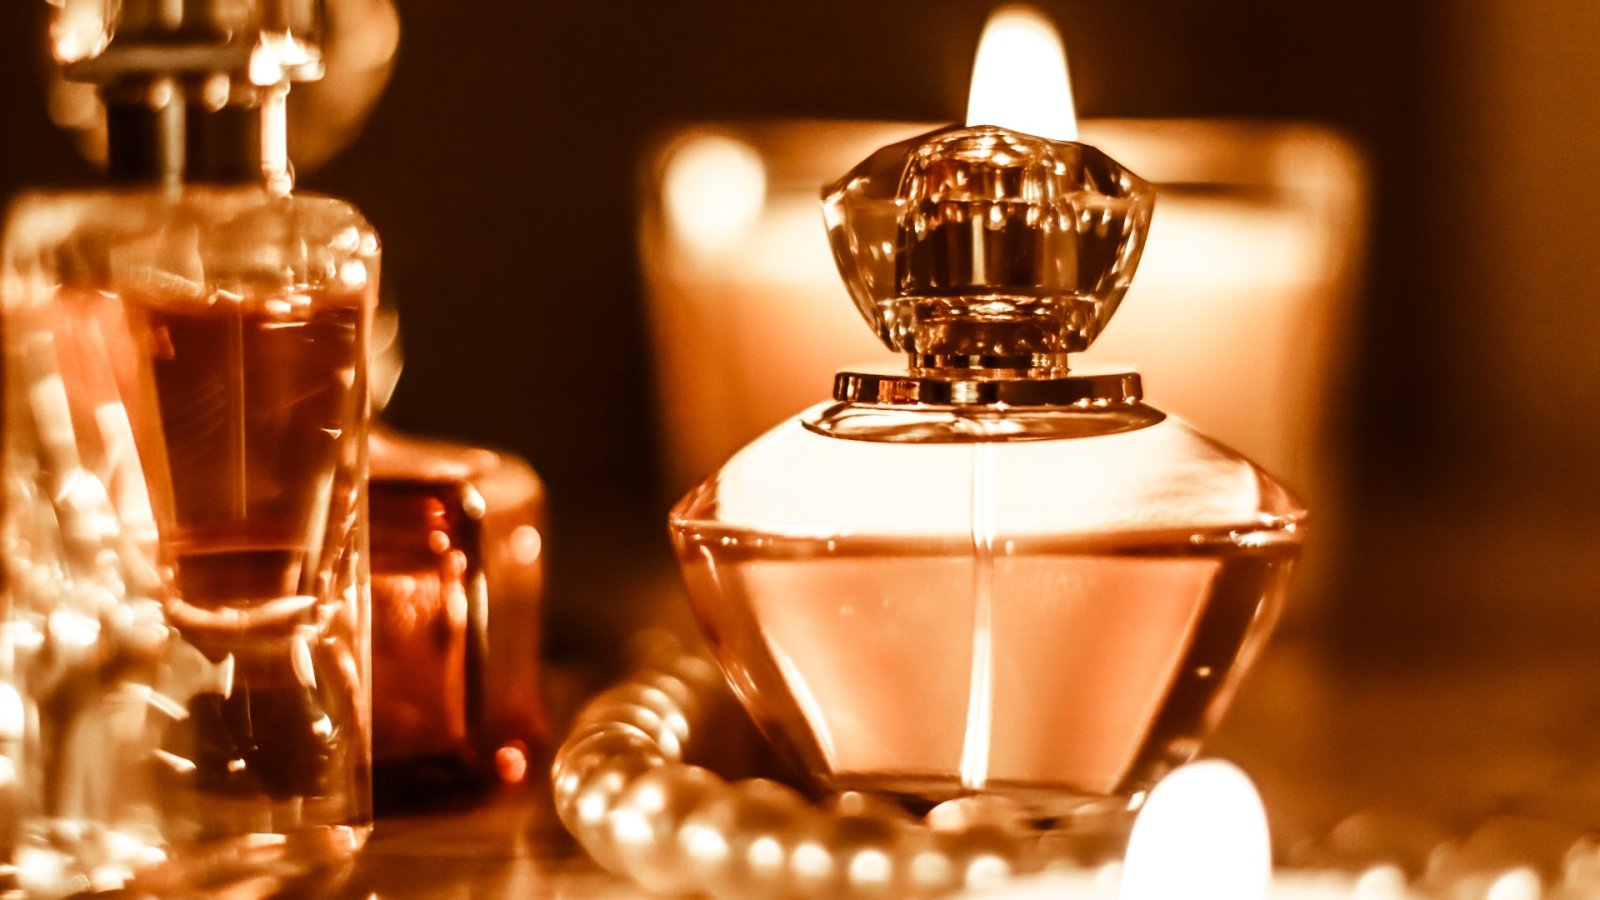 Siga a fragrância: descobrindo a trilha de jasmim da Índia e seus perfumes luxuosos